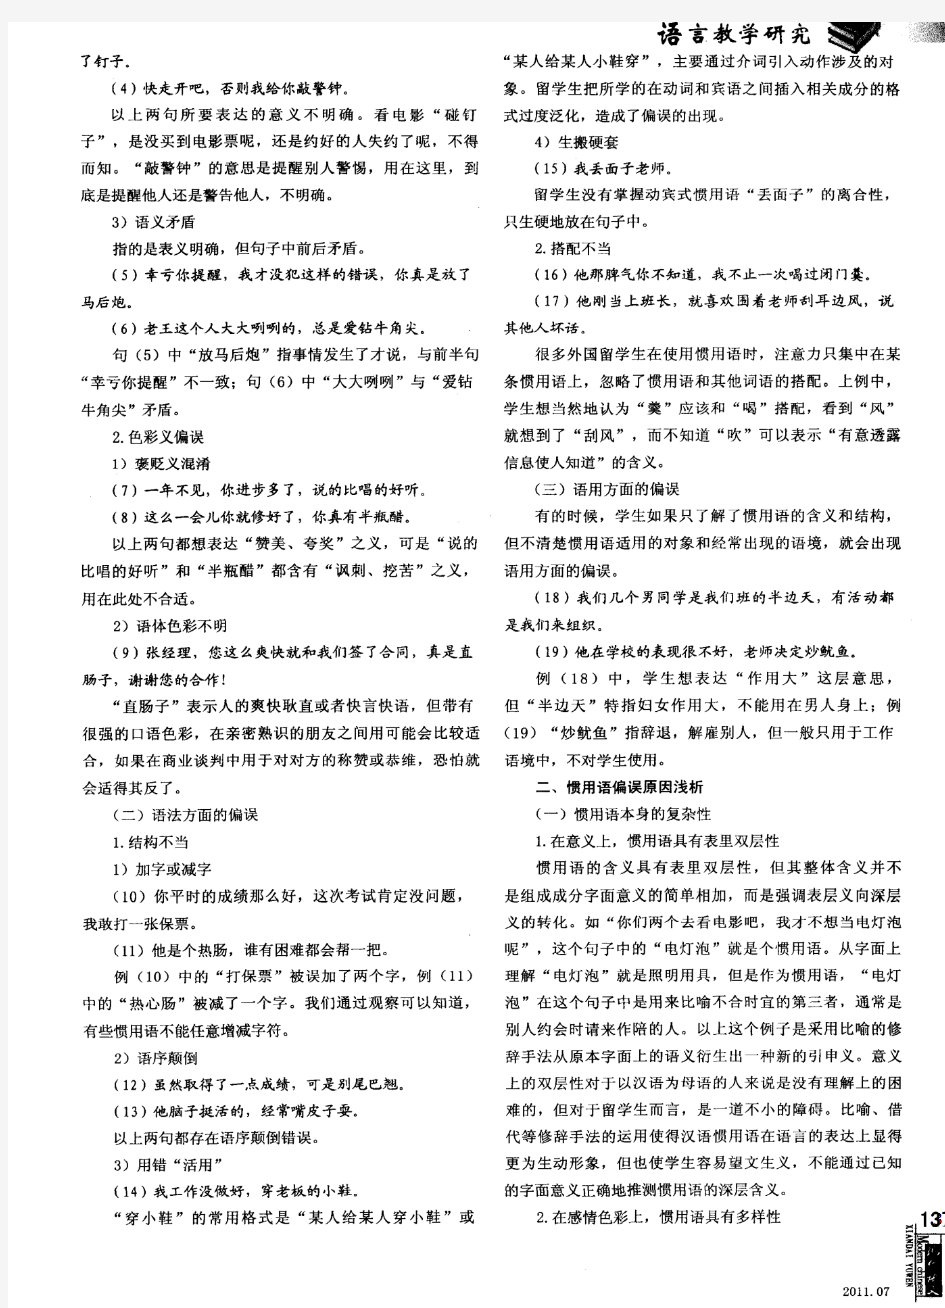 对外汉语教学中的惯用语偏误分析及启示